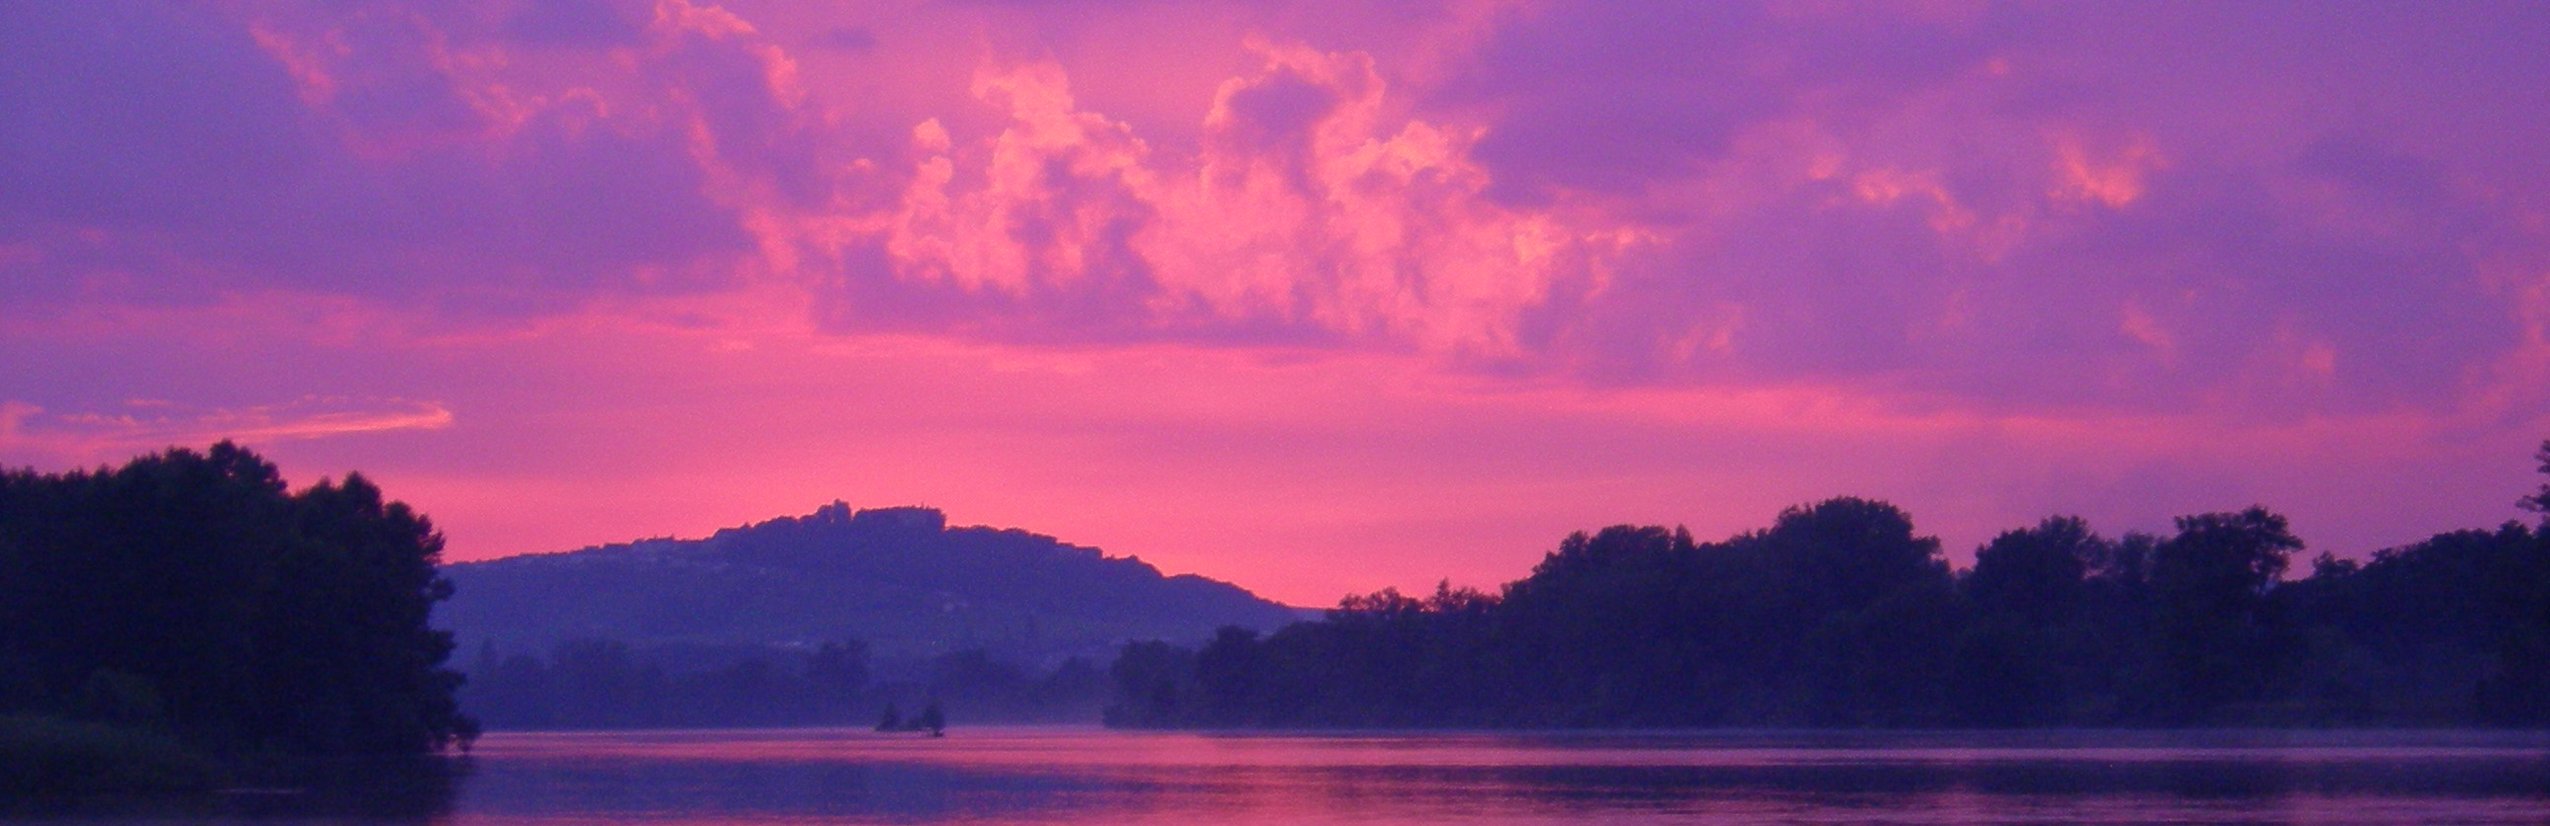 Frankreich Familienreise - Sonnenuntergang über dem Wasser